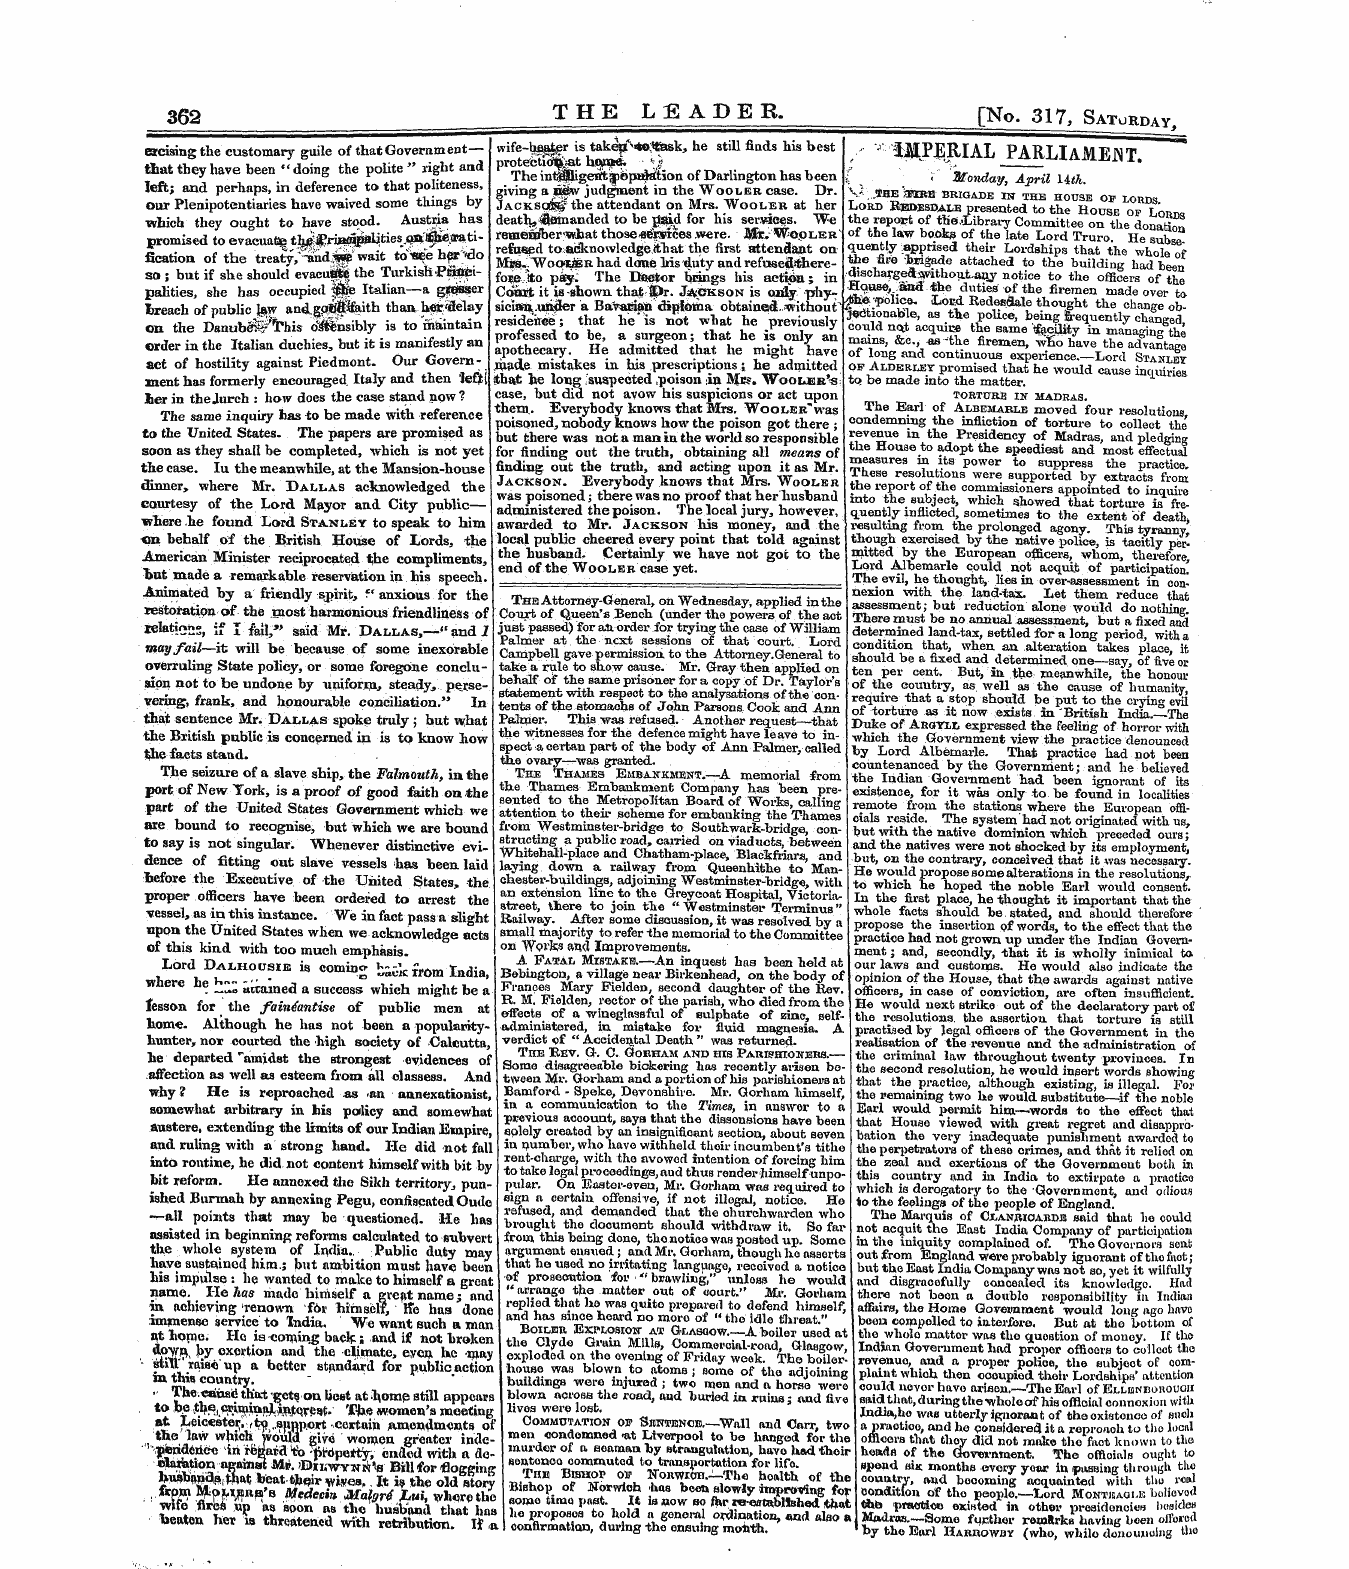 Leader (1850-1860): jS F Y, 2nd edition - 362 The Leadee. [No. 317, Satorhav